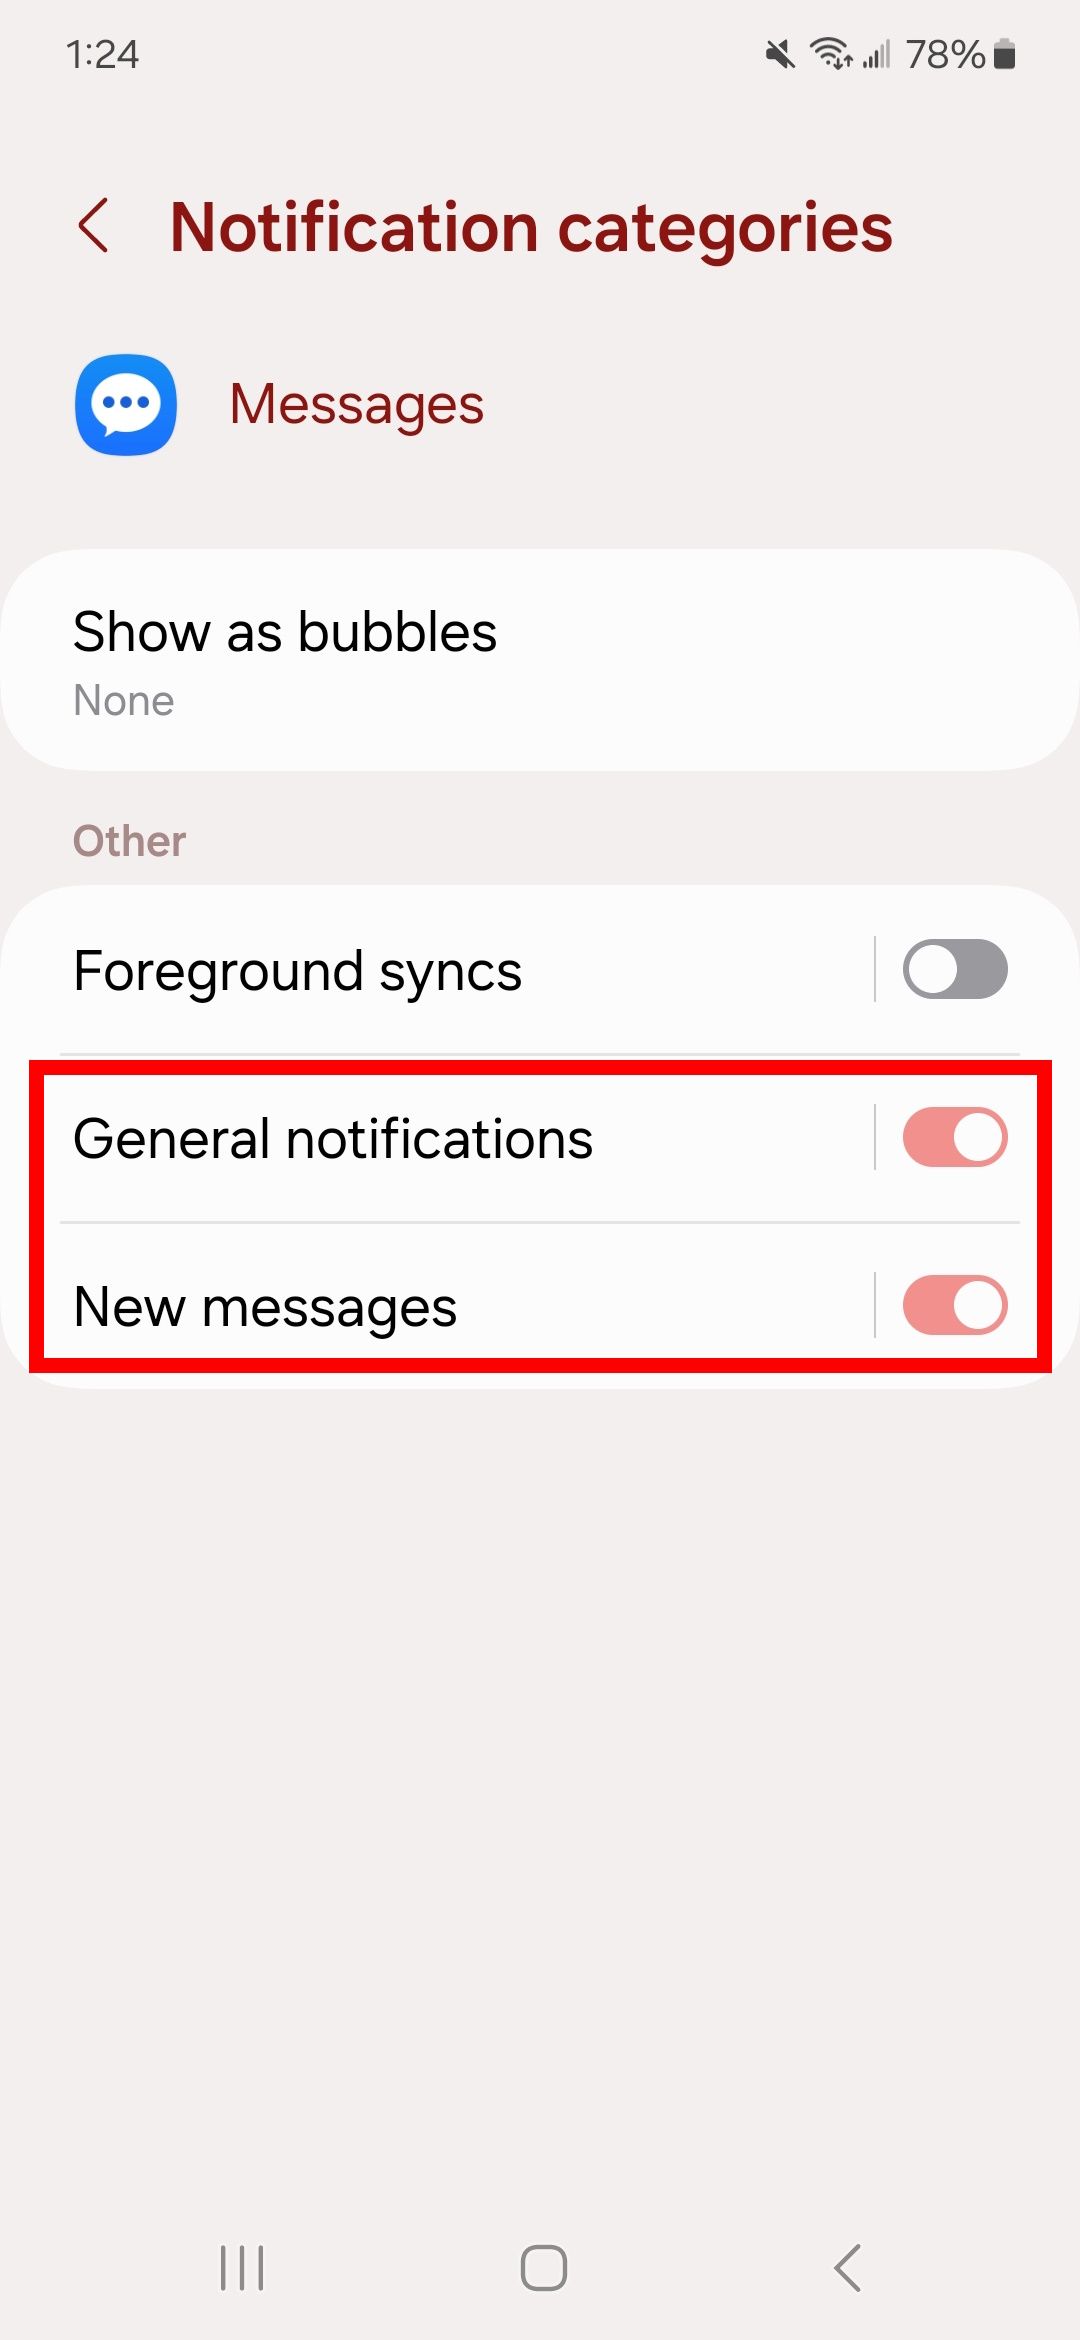 Contorno de retângulo vermelho sobre notificações gerais e novas mensagens em categorias de notificação no Samsung Mensagens em um telefone Samsung